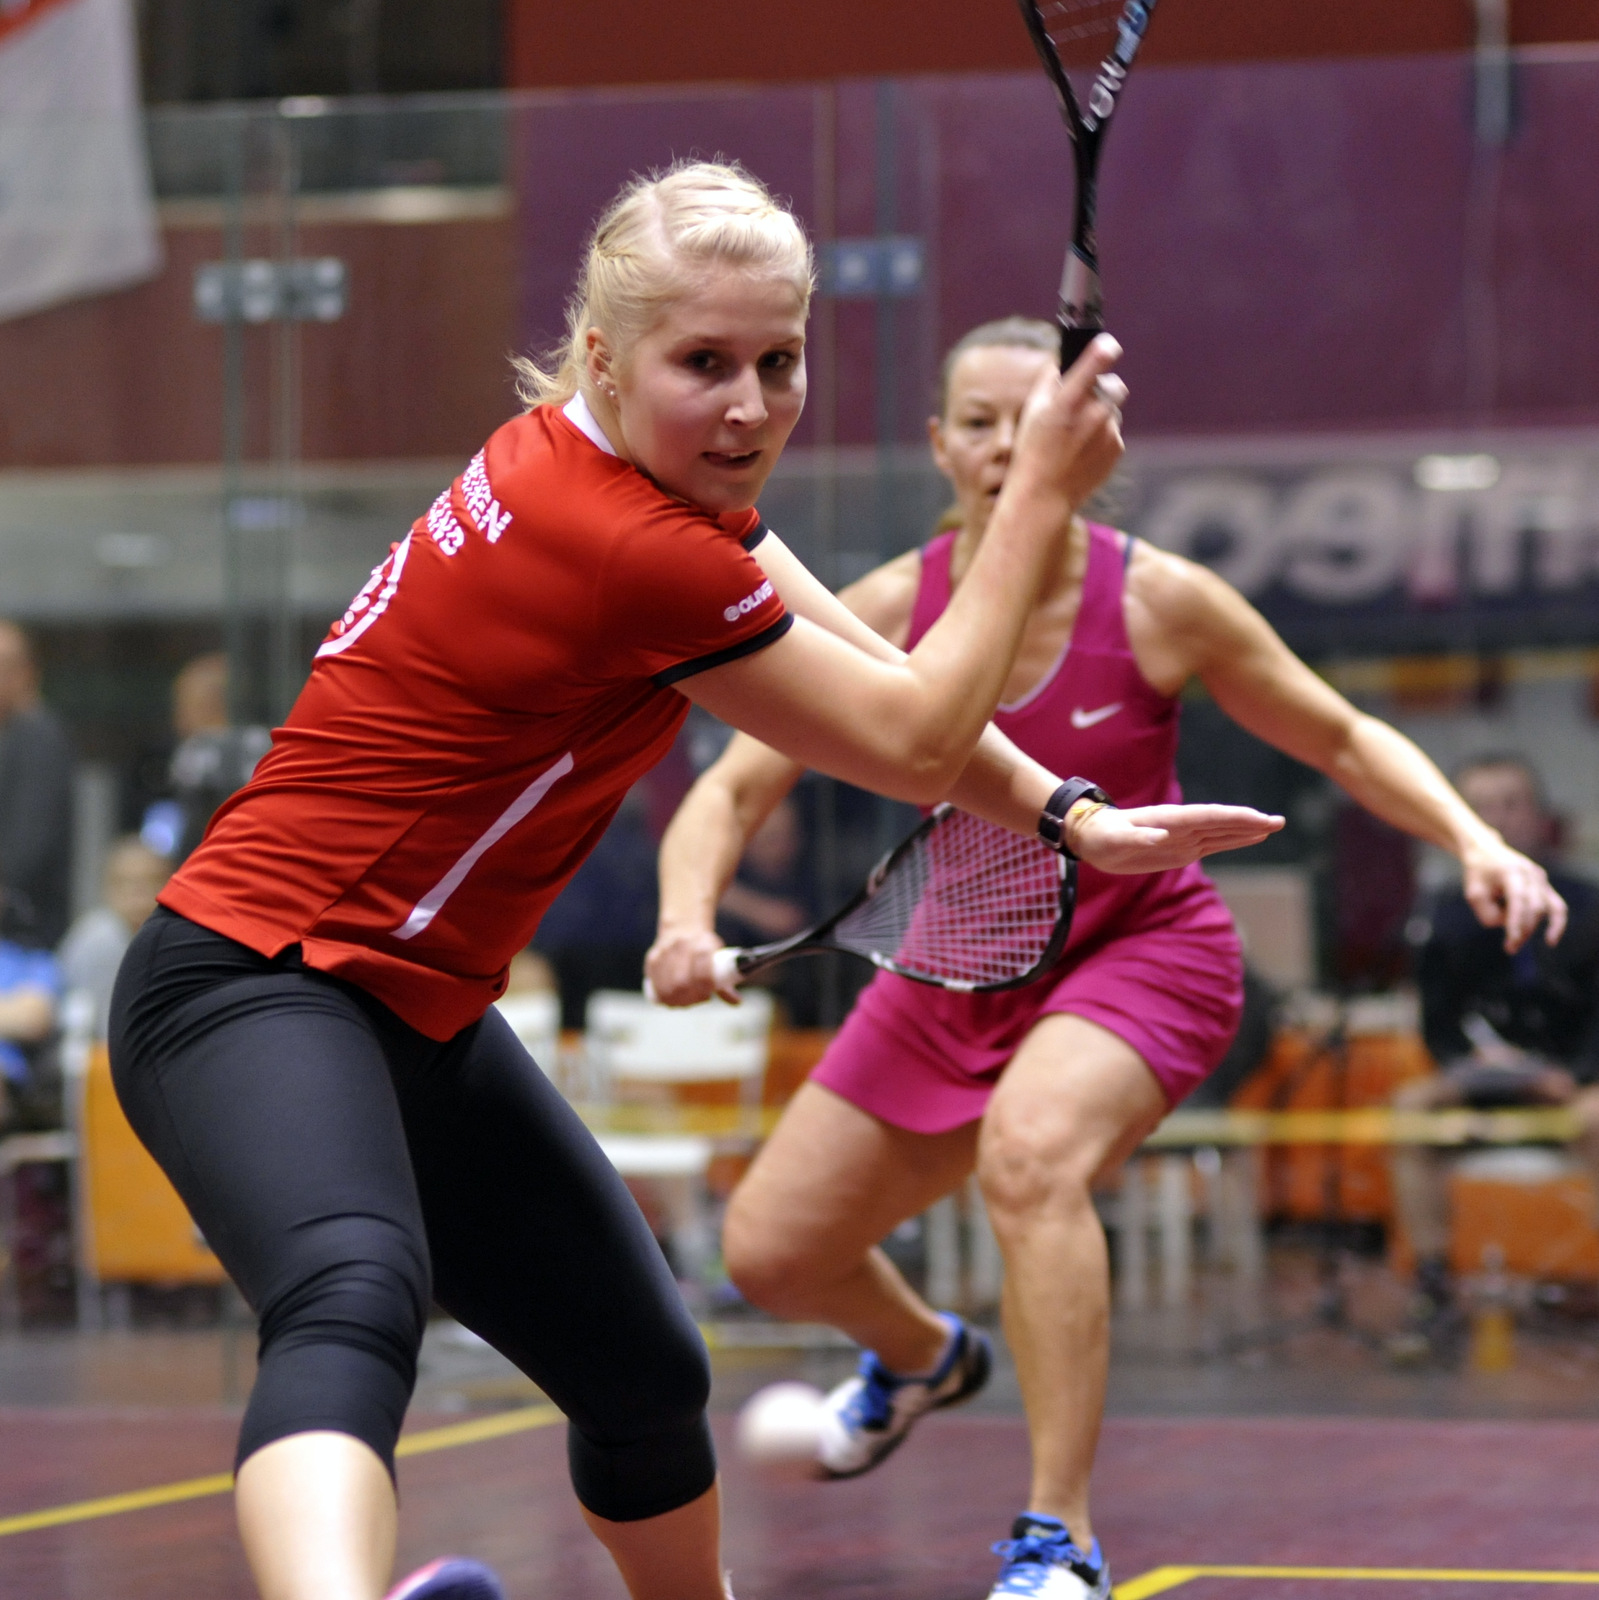 Kuopiosta maailmalle: Riina Koskisen matka squashin huipulle